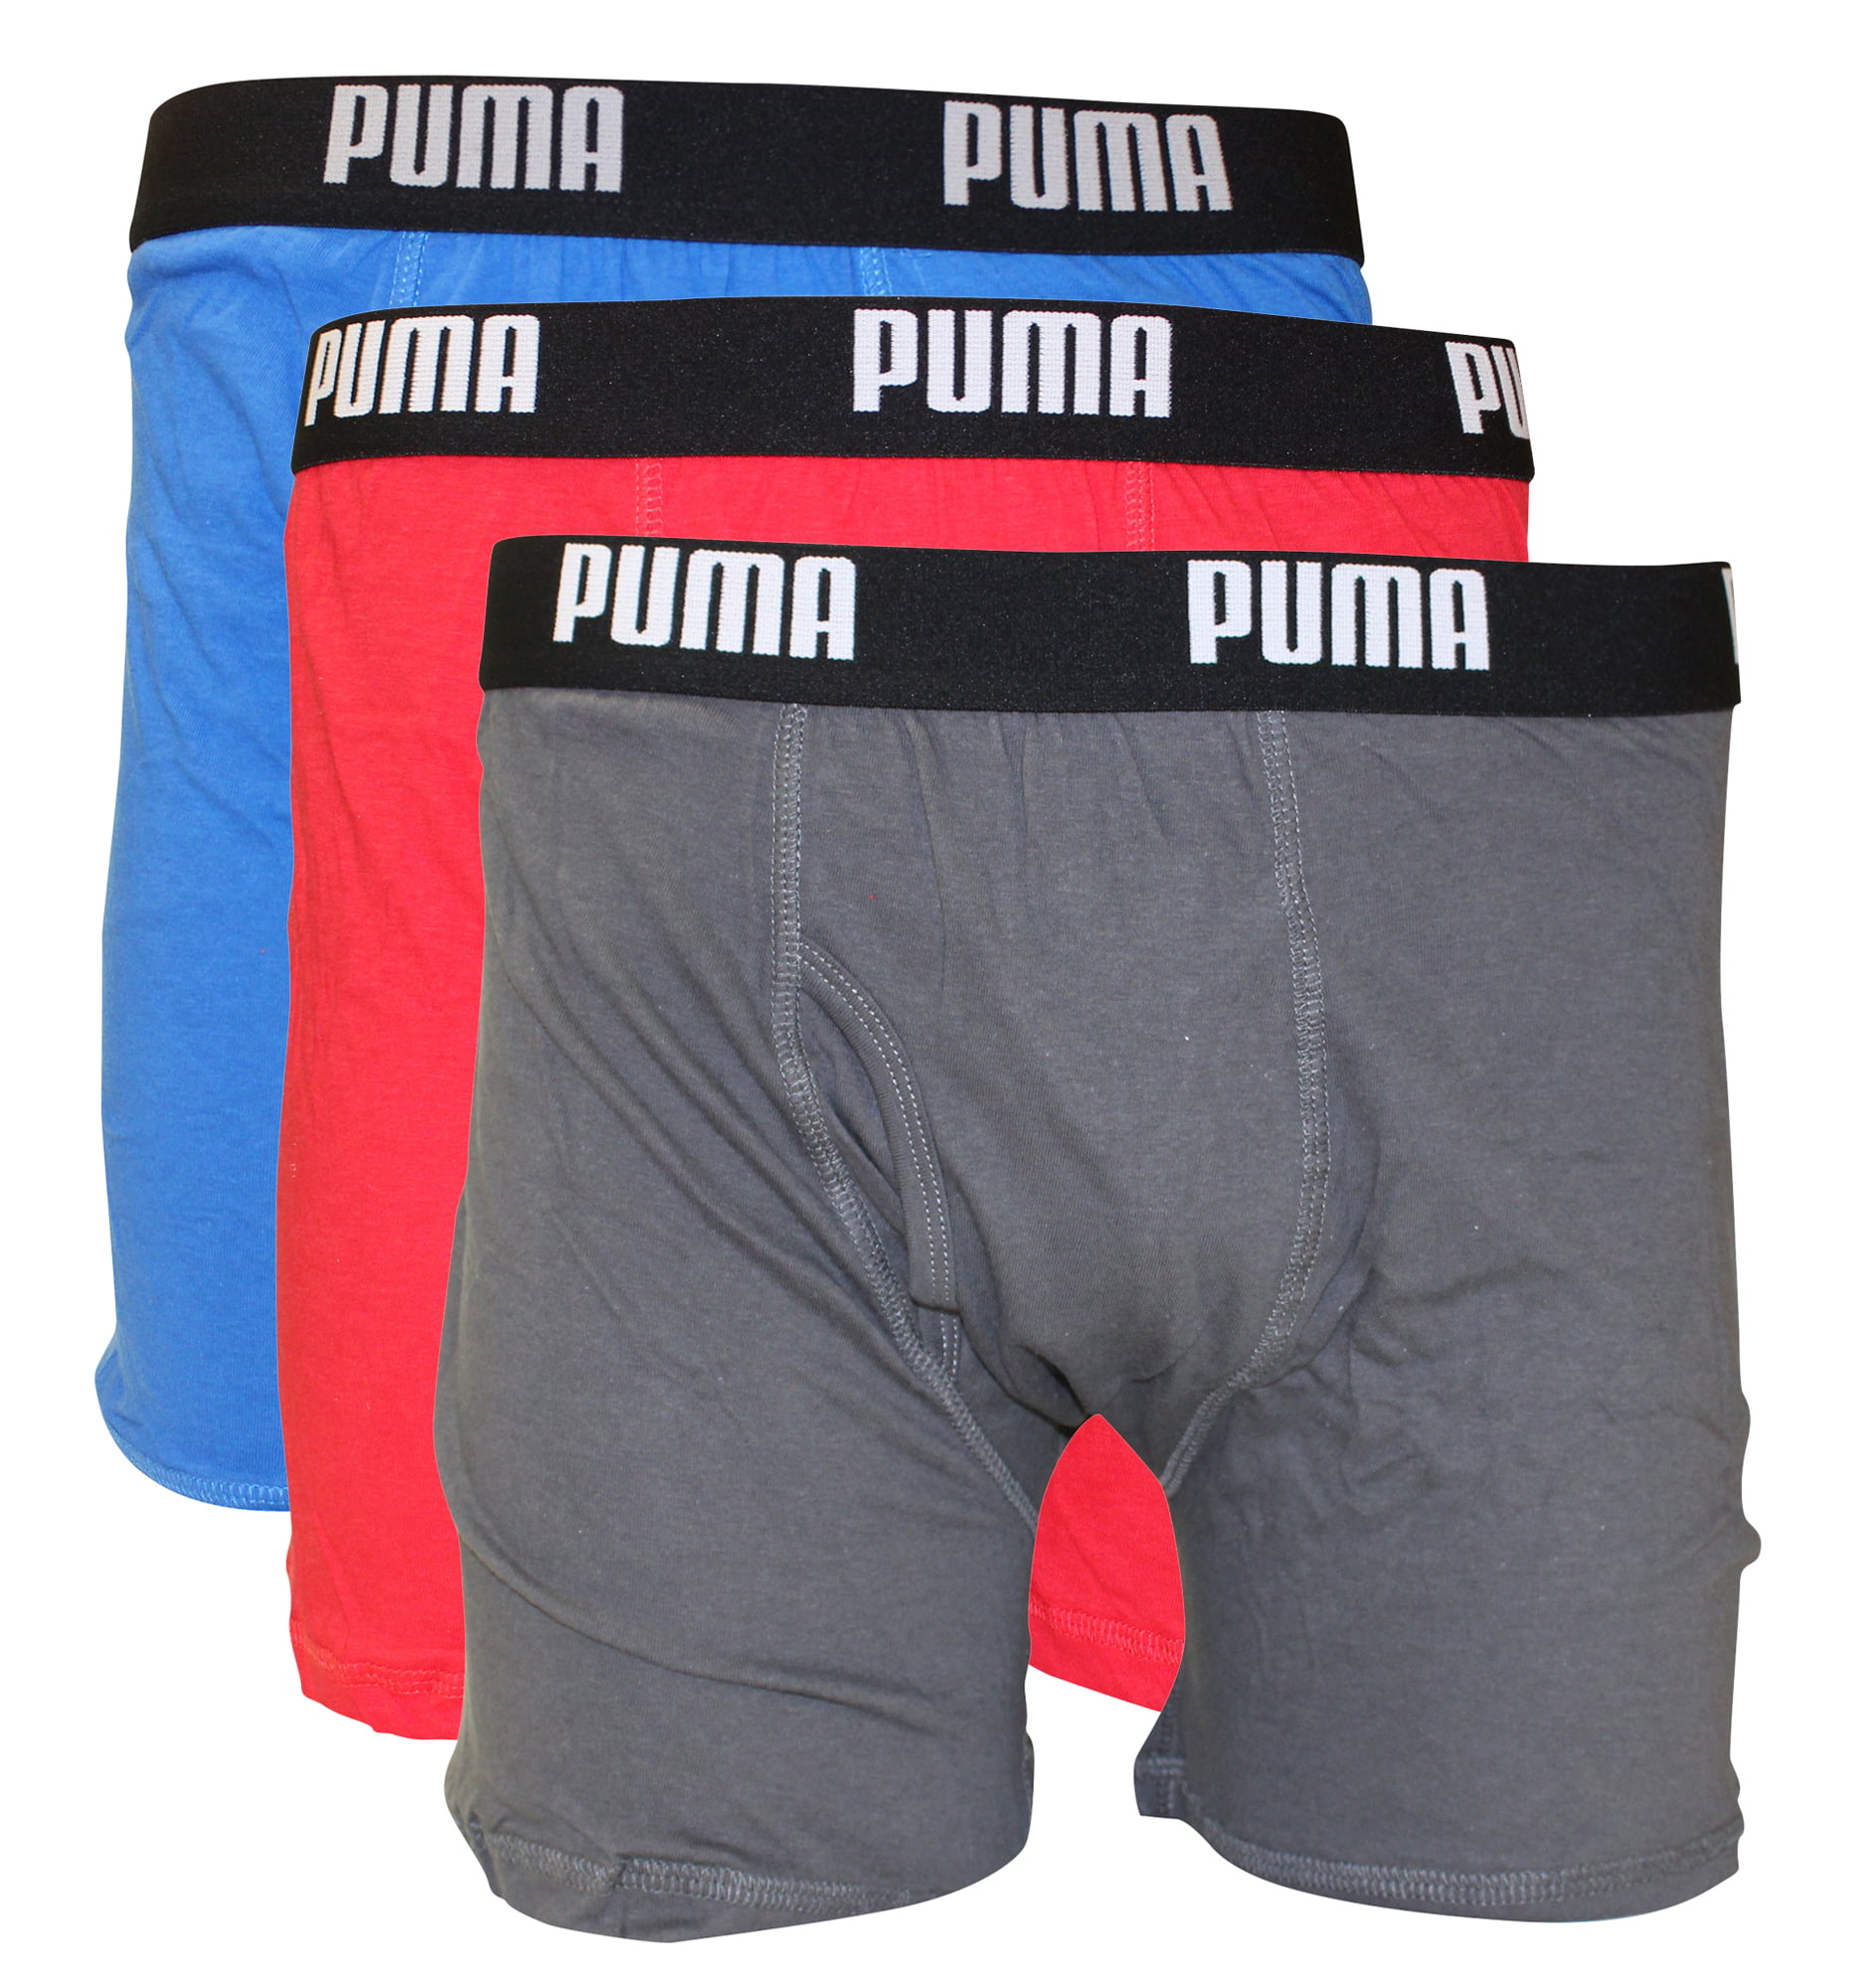 Plain Men Cotton Underwear, Type: Boxer Briefs at Rs 75/piece in